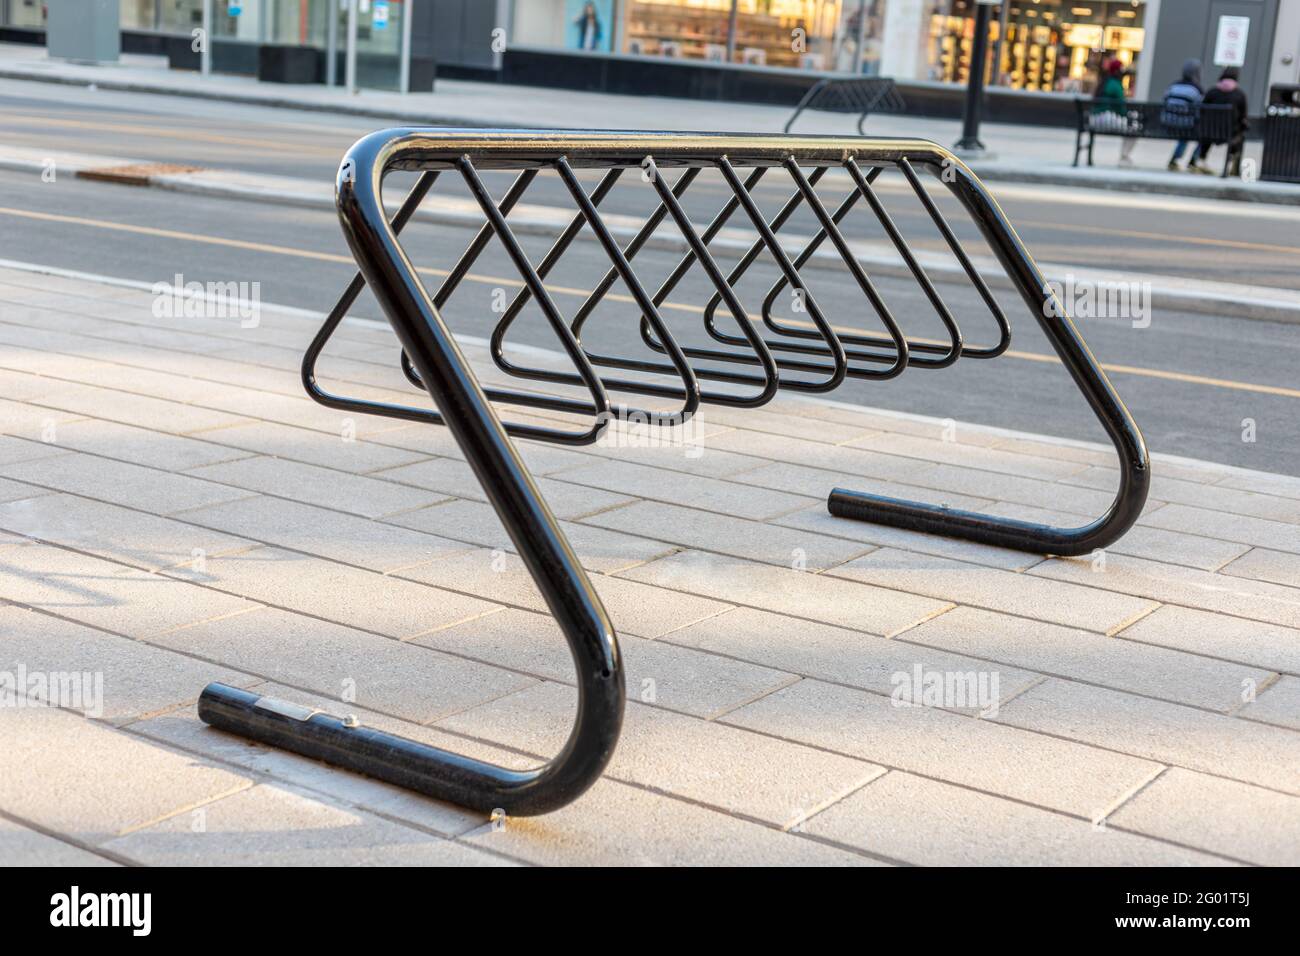 Porte-vélos pour le stationnement de bicyclettes dans la rue du centre-ville d'Ottawa, Canada. Bycycle se trouve sur le trottoir près de la route dans la ville. Banque D'Images